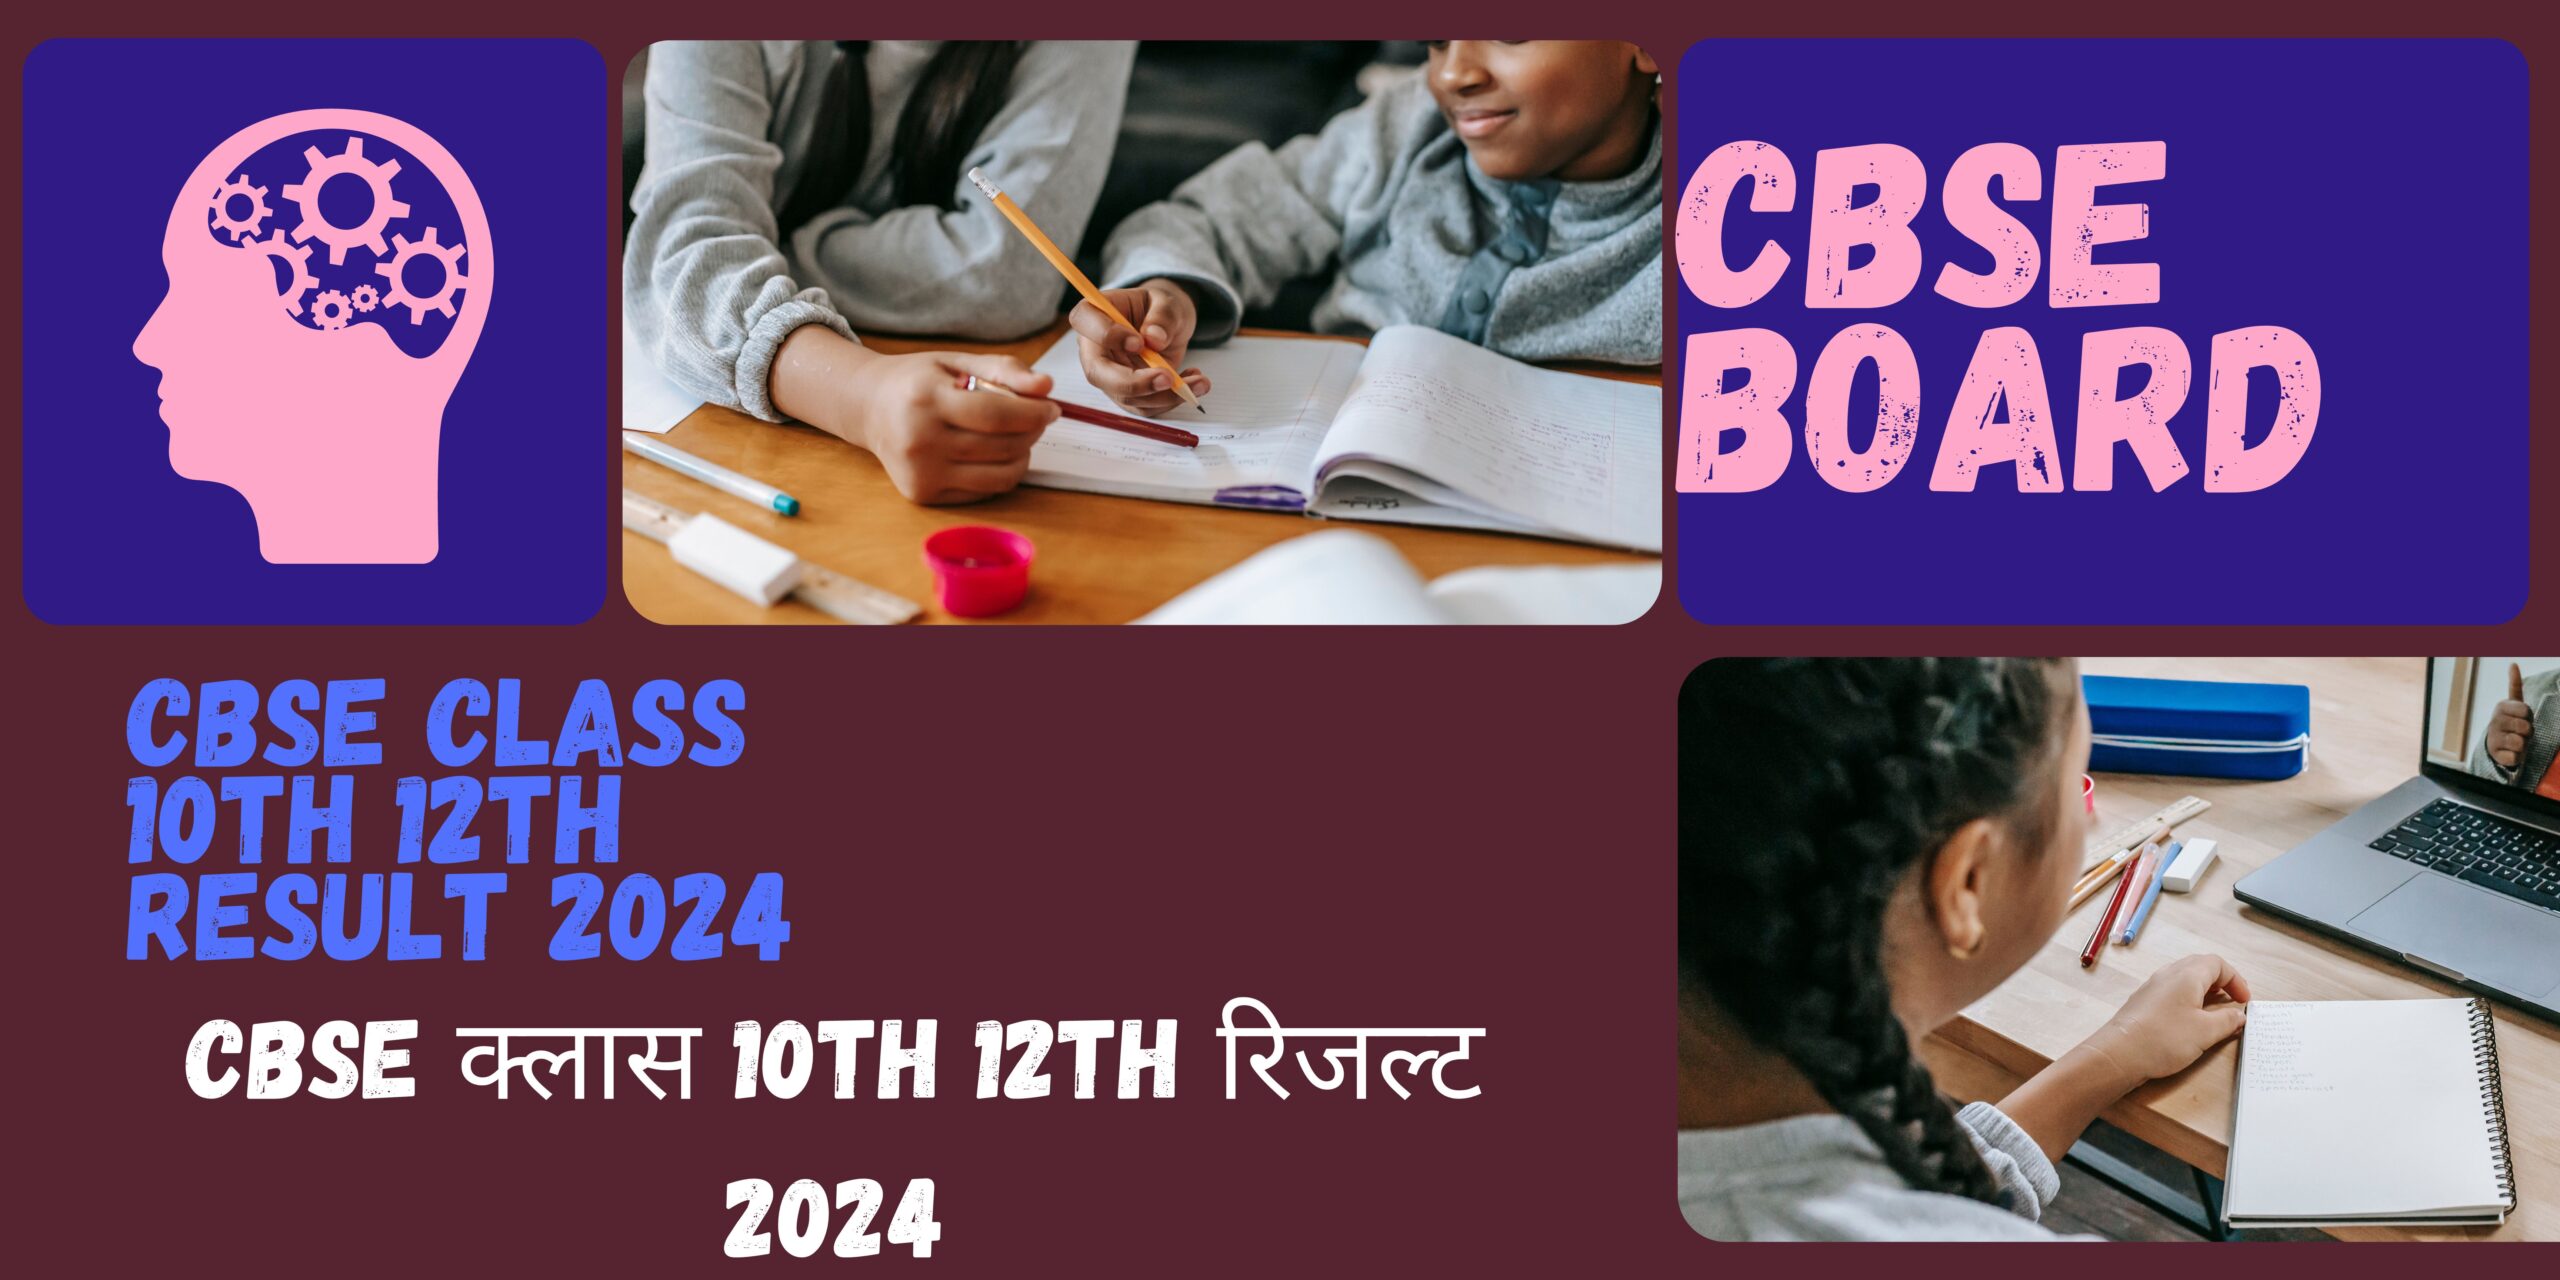 CBSE board 10th 12th result 2024: बढ़ गया सीबीएसई 10वीं और 12वीं रिजल्ट का तारीख 20 मई के बाद आएगा नतीजा